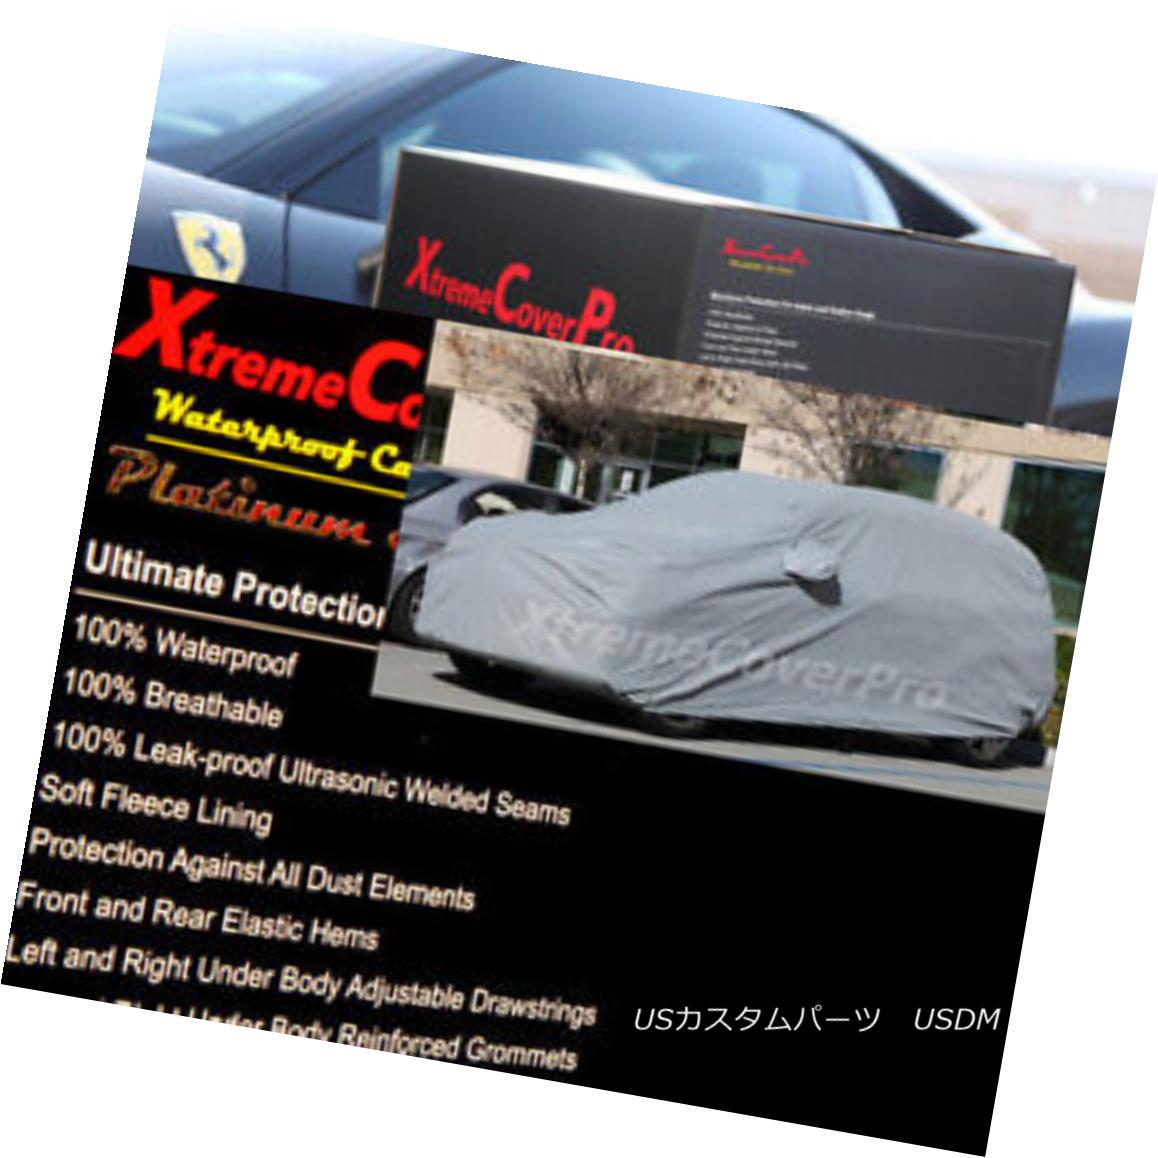 カーカバー 2015 MITSUBISHI OUTLANDER Waterproof Car Cover w/Mirror Pockets - Gray 2015 MITSUBISHI OUTLANDERミラーポケット付き防水カーカバー - グレー